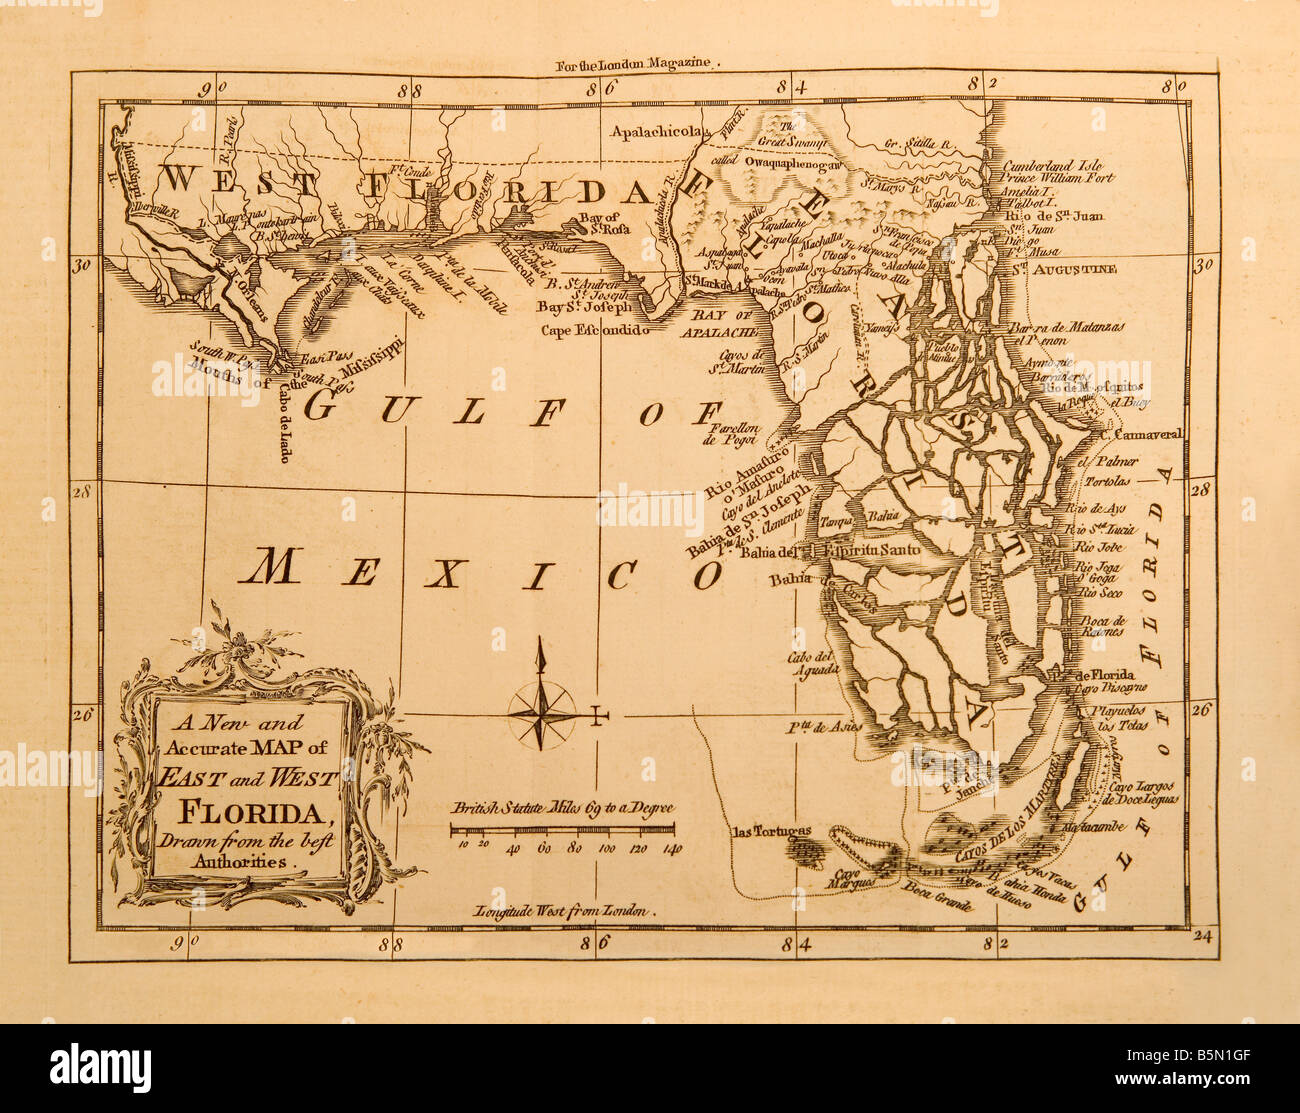 Eine alte Karte der US-Bundesstaat Florida in den USA im Jahre 1764 für London Magazine gemacht Stockfoto